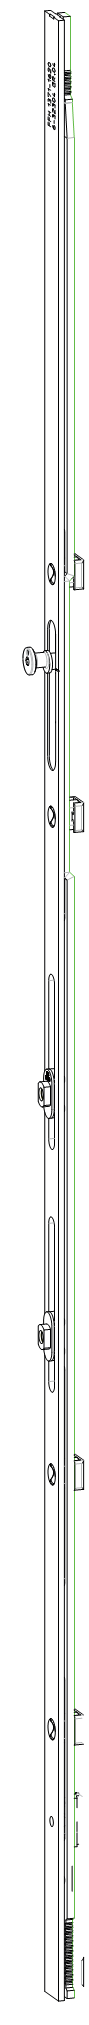 GU-ITALIA -  Cremonese GU-966 per complanare parallelo altezza maniglia fissa prolungabile senza dss - gr / dim. 1340 - alt. man. 980 - lbb/hbb 1621 - 1870